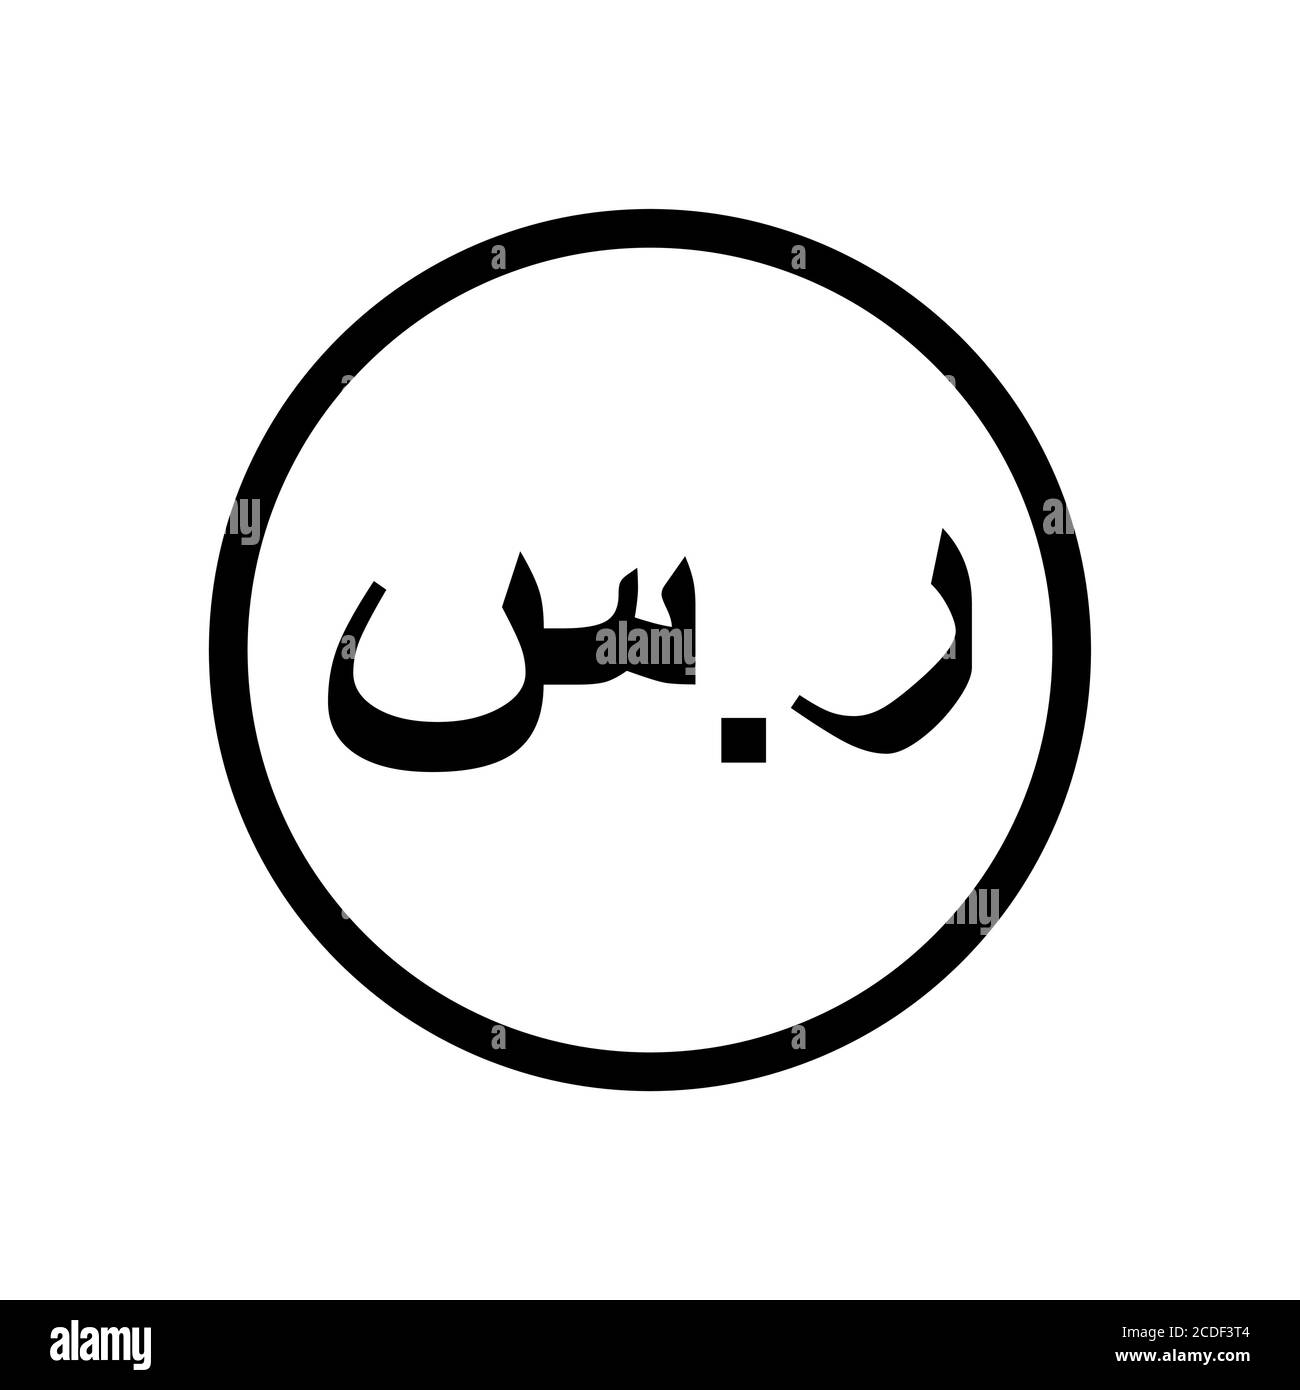 Saudi Riyal moneta monocromatica in bianco e nero. Simbolo della valuta corrente. Illustrazione Vettoriale